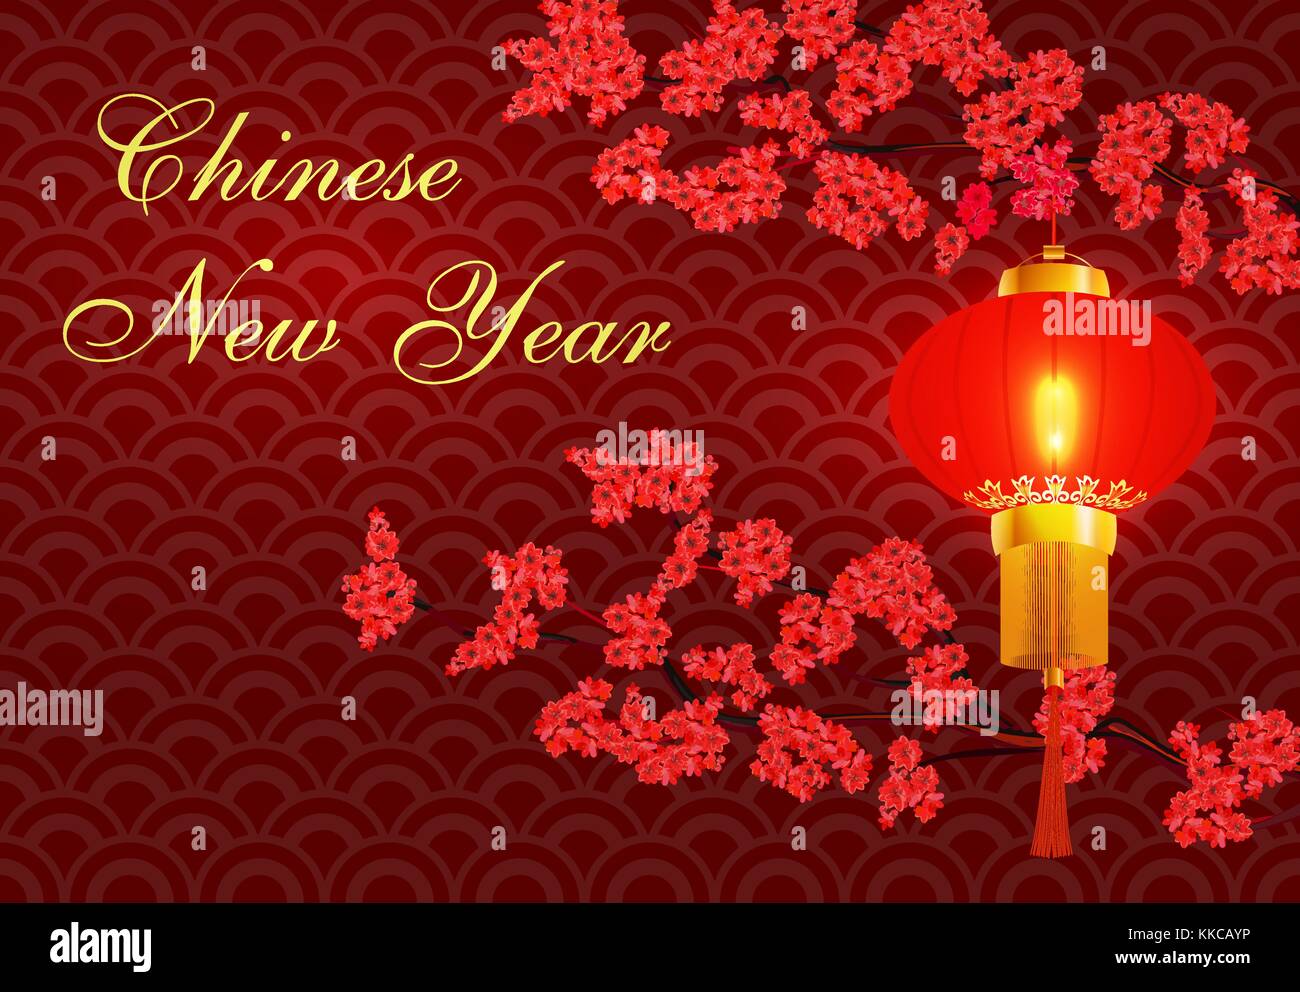 Chinesisches neues Jahr. zwei Zweigen einer blühende rote Kirsche. hängende rote chinesische Laterne. congratulatory Inschrift. Abbildung Stock Vektor